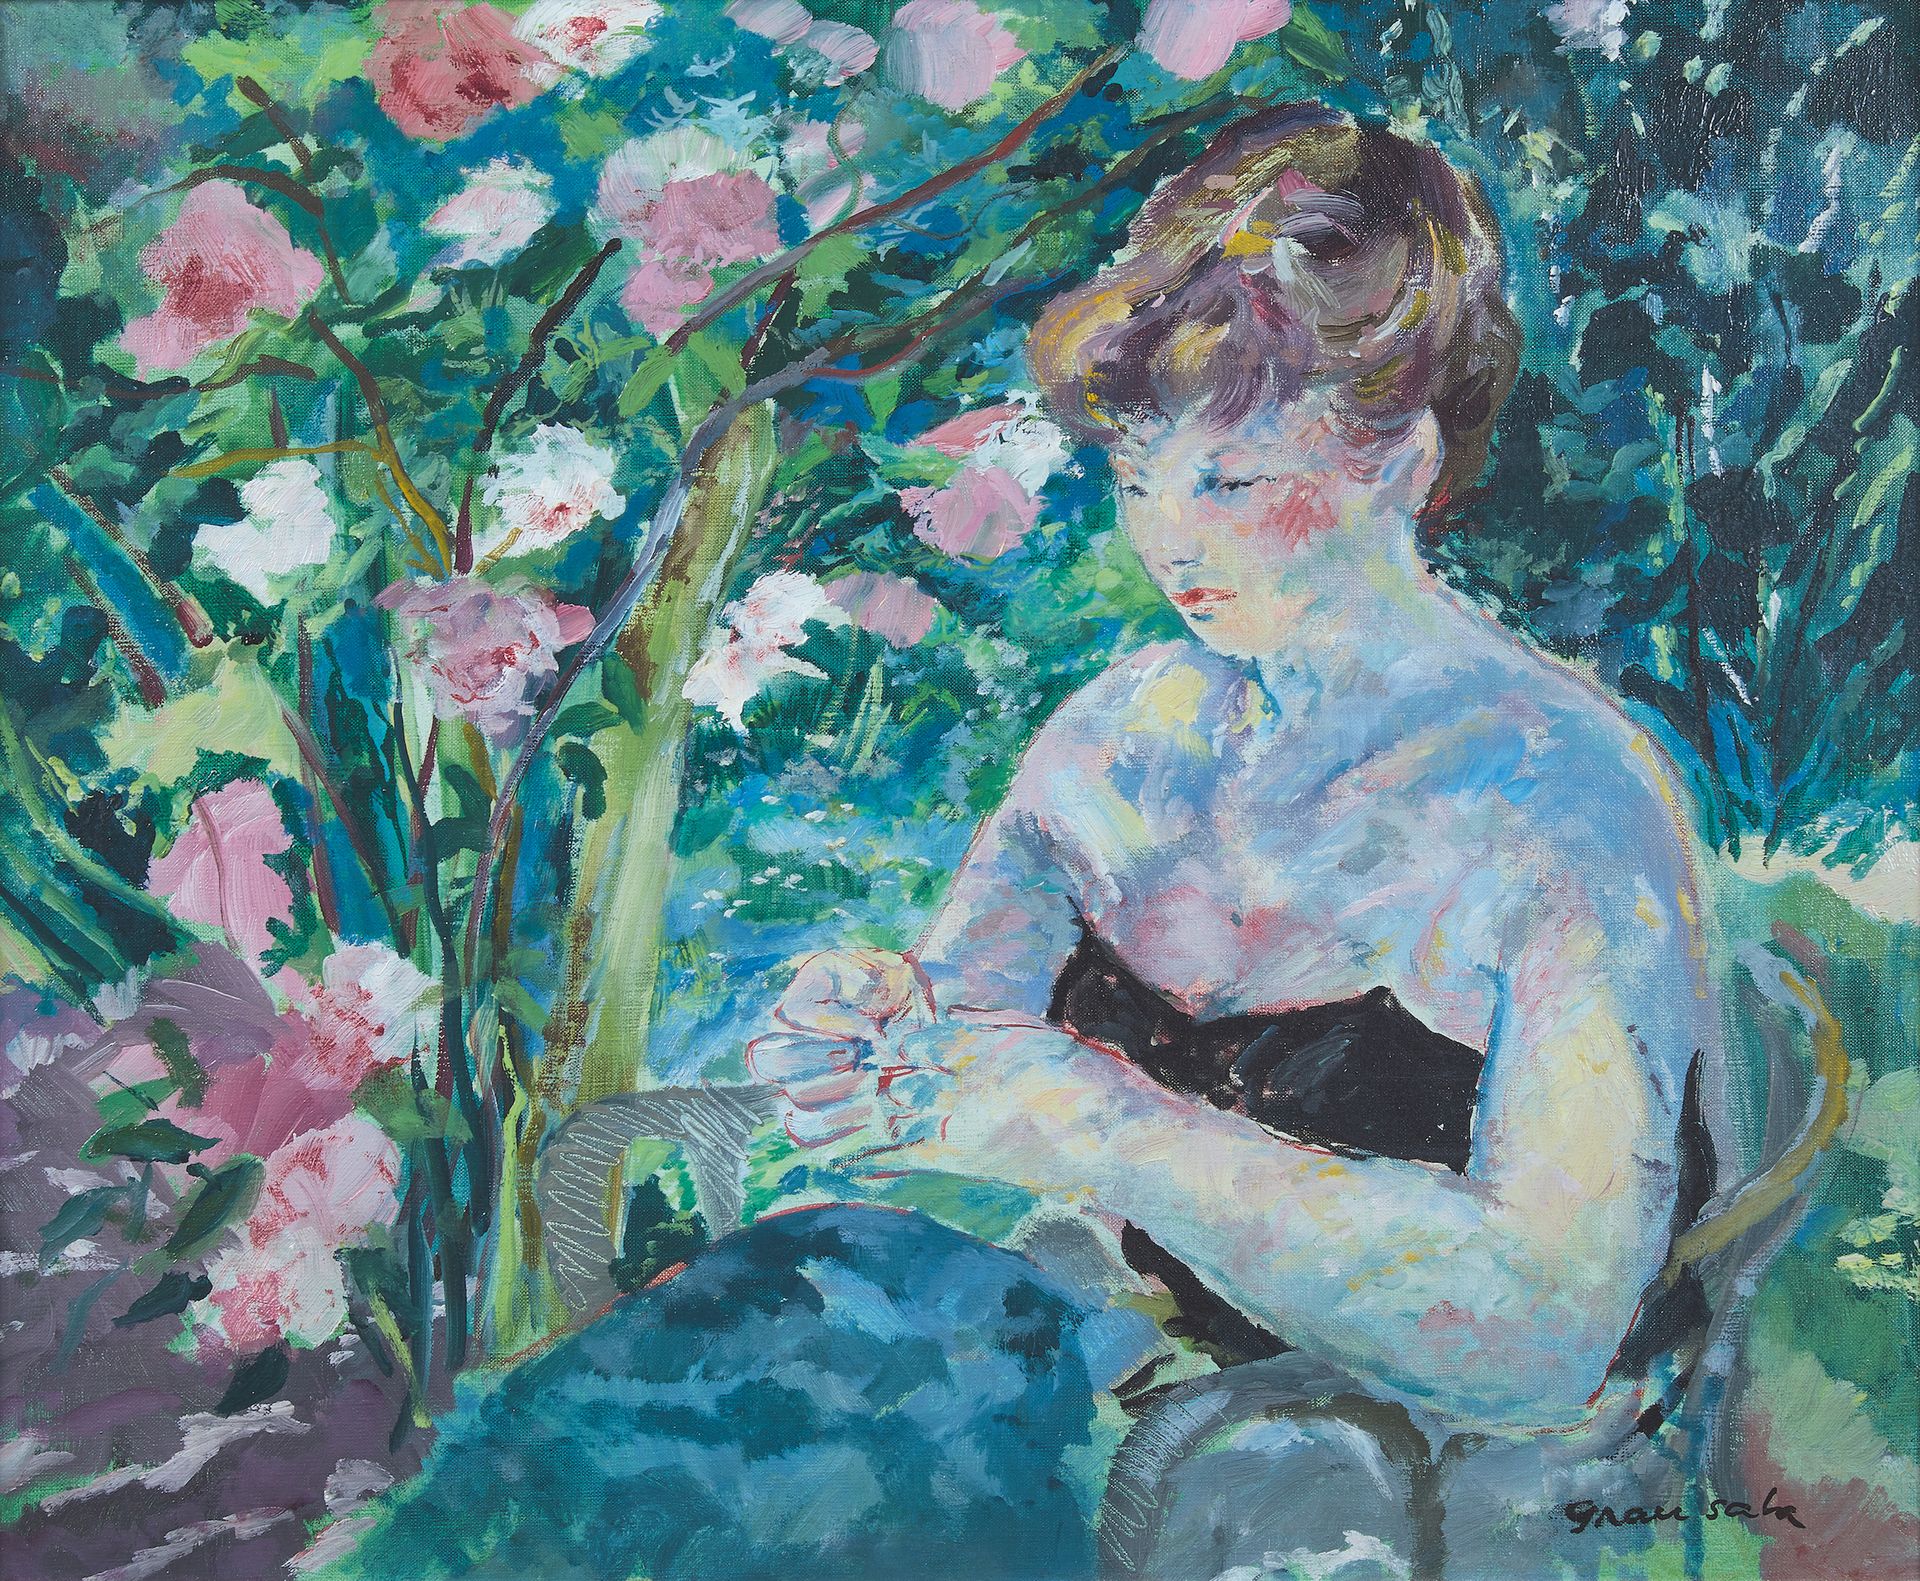 Emilio Grau Sala (1911-1975) 在花园里缝衣服的女人
布面油画，右下角有签名。
50 x 61 cm。
物证。
.收集R.，巴黎。